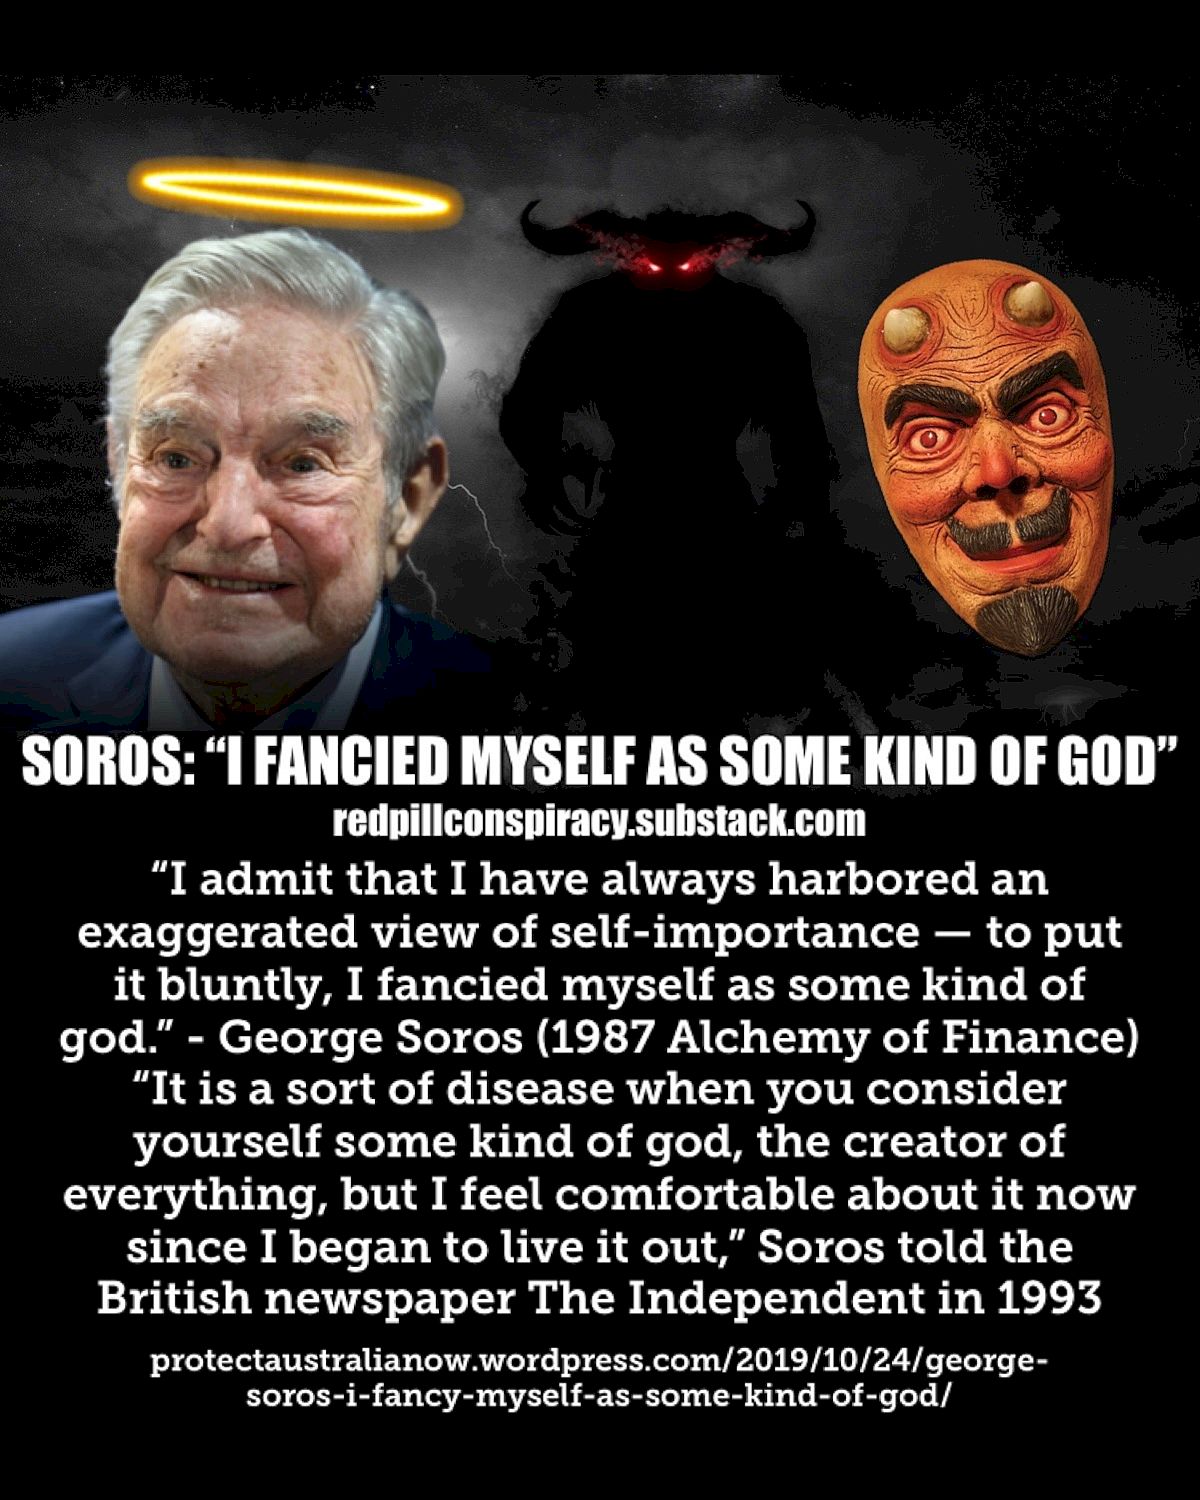 George Soros: "Pidin itseäni jonkinlaisena jumalana"